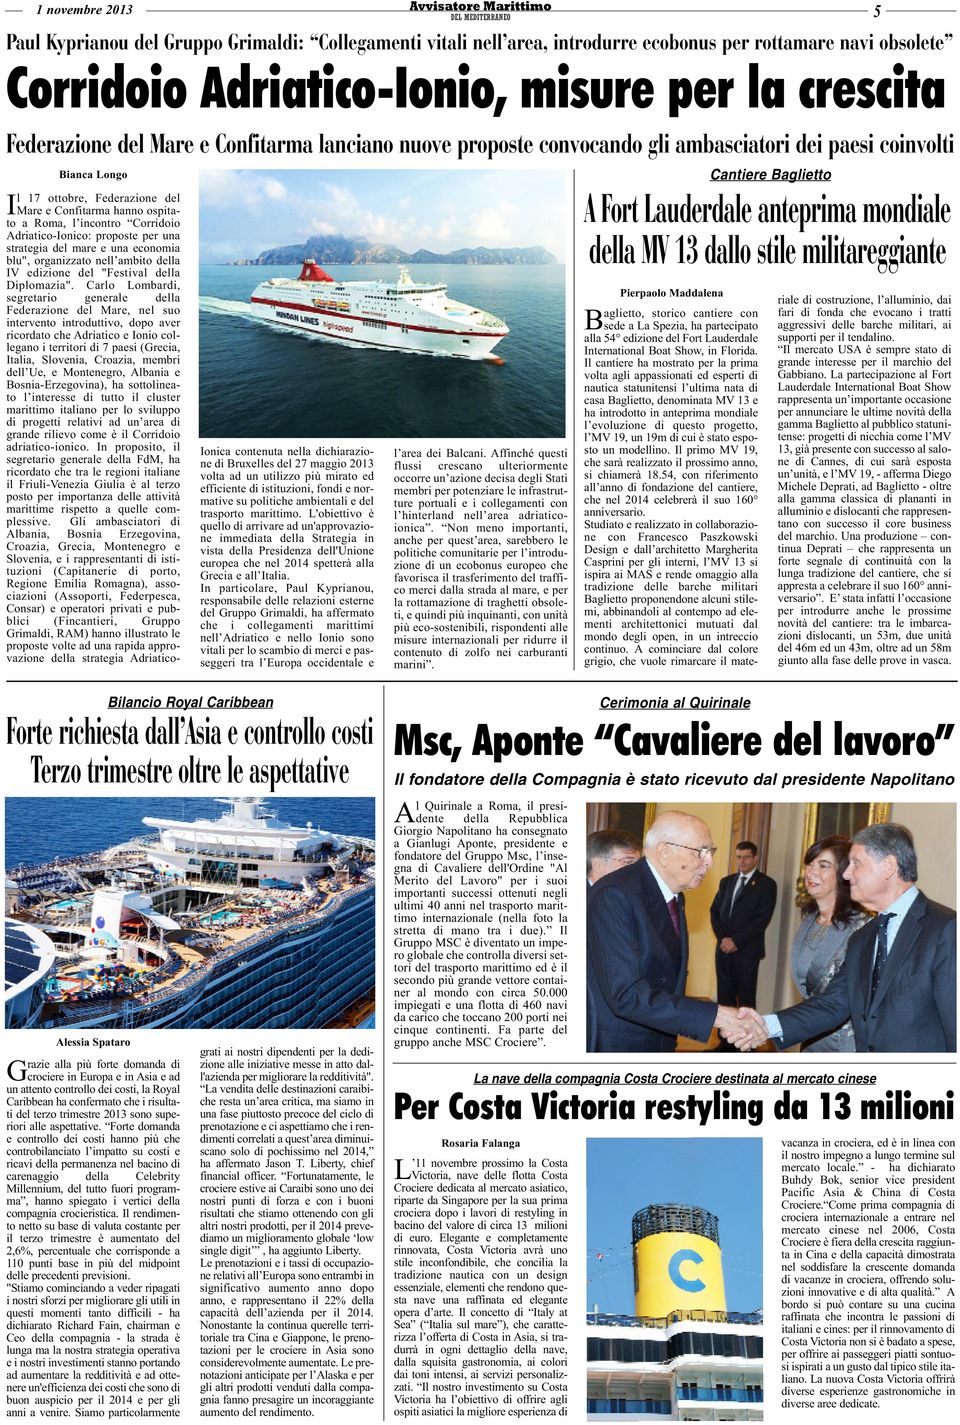 Adriatico-Ionico: proposte per una strategia del mare e una economia blu", organizzato nell ambito della IV edizione del "Festival della Diplomazia".